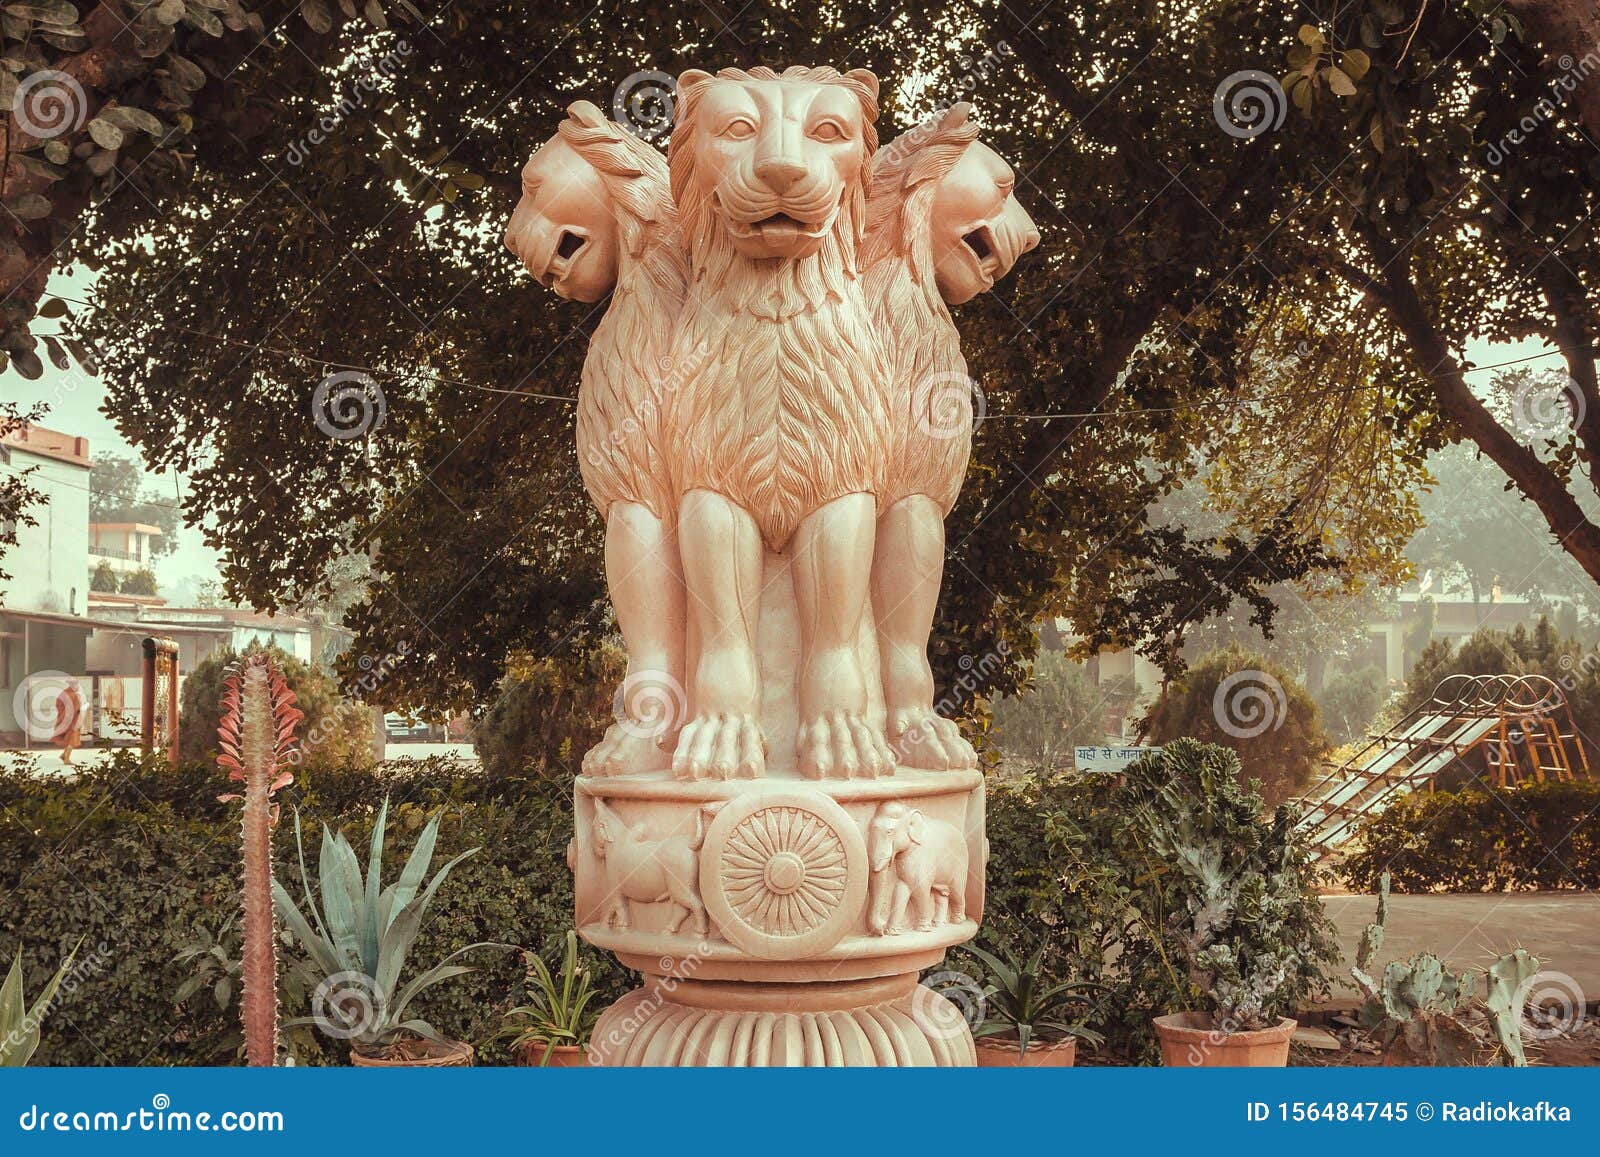 lions on sculptured national emblem of india. copy of the ancient ashoka pillar of sarnath